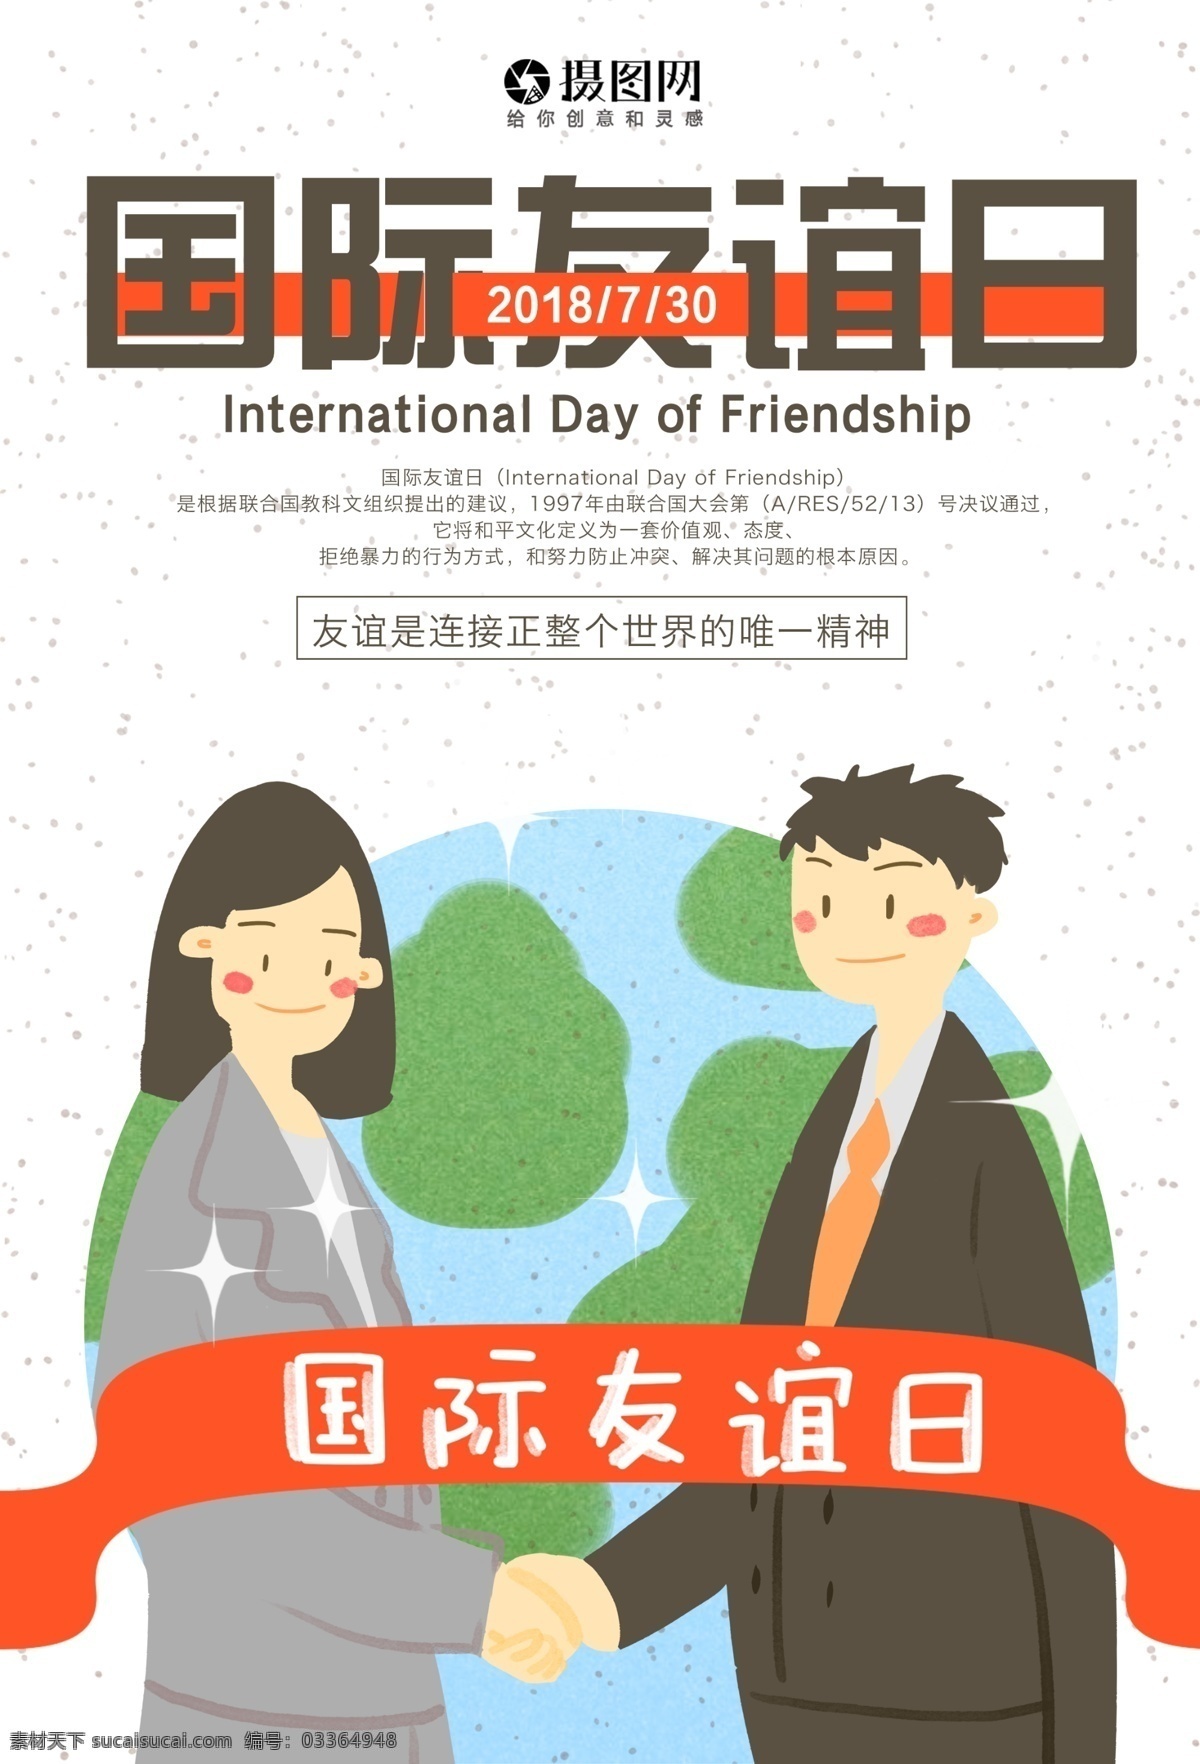 国际 友谊 日 海报 国际友谊日 友人 精神 联合国